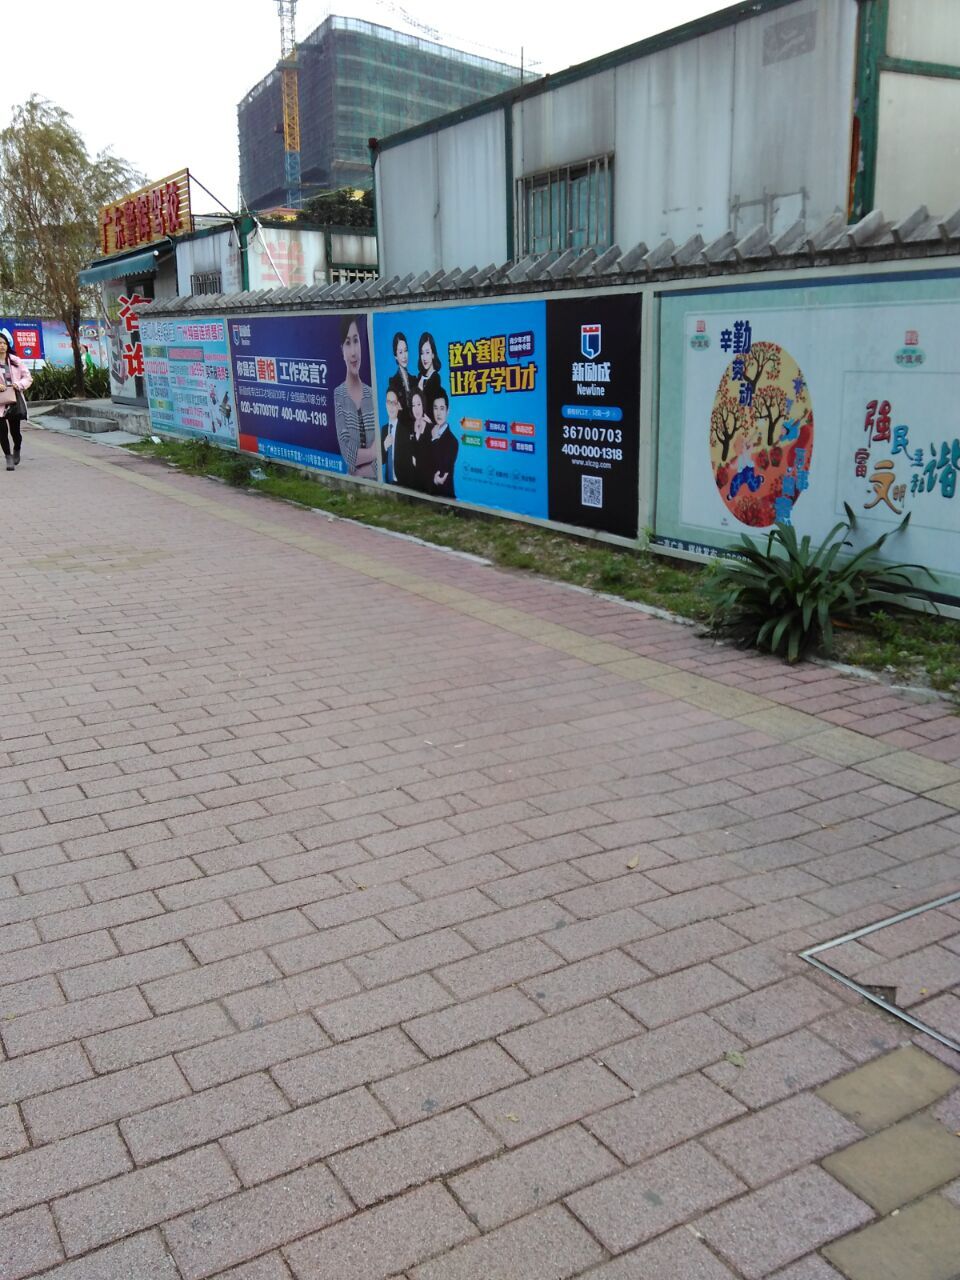 供应广州围墙广告发布广州广告围墙广告